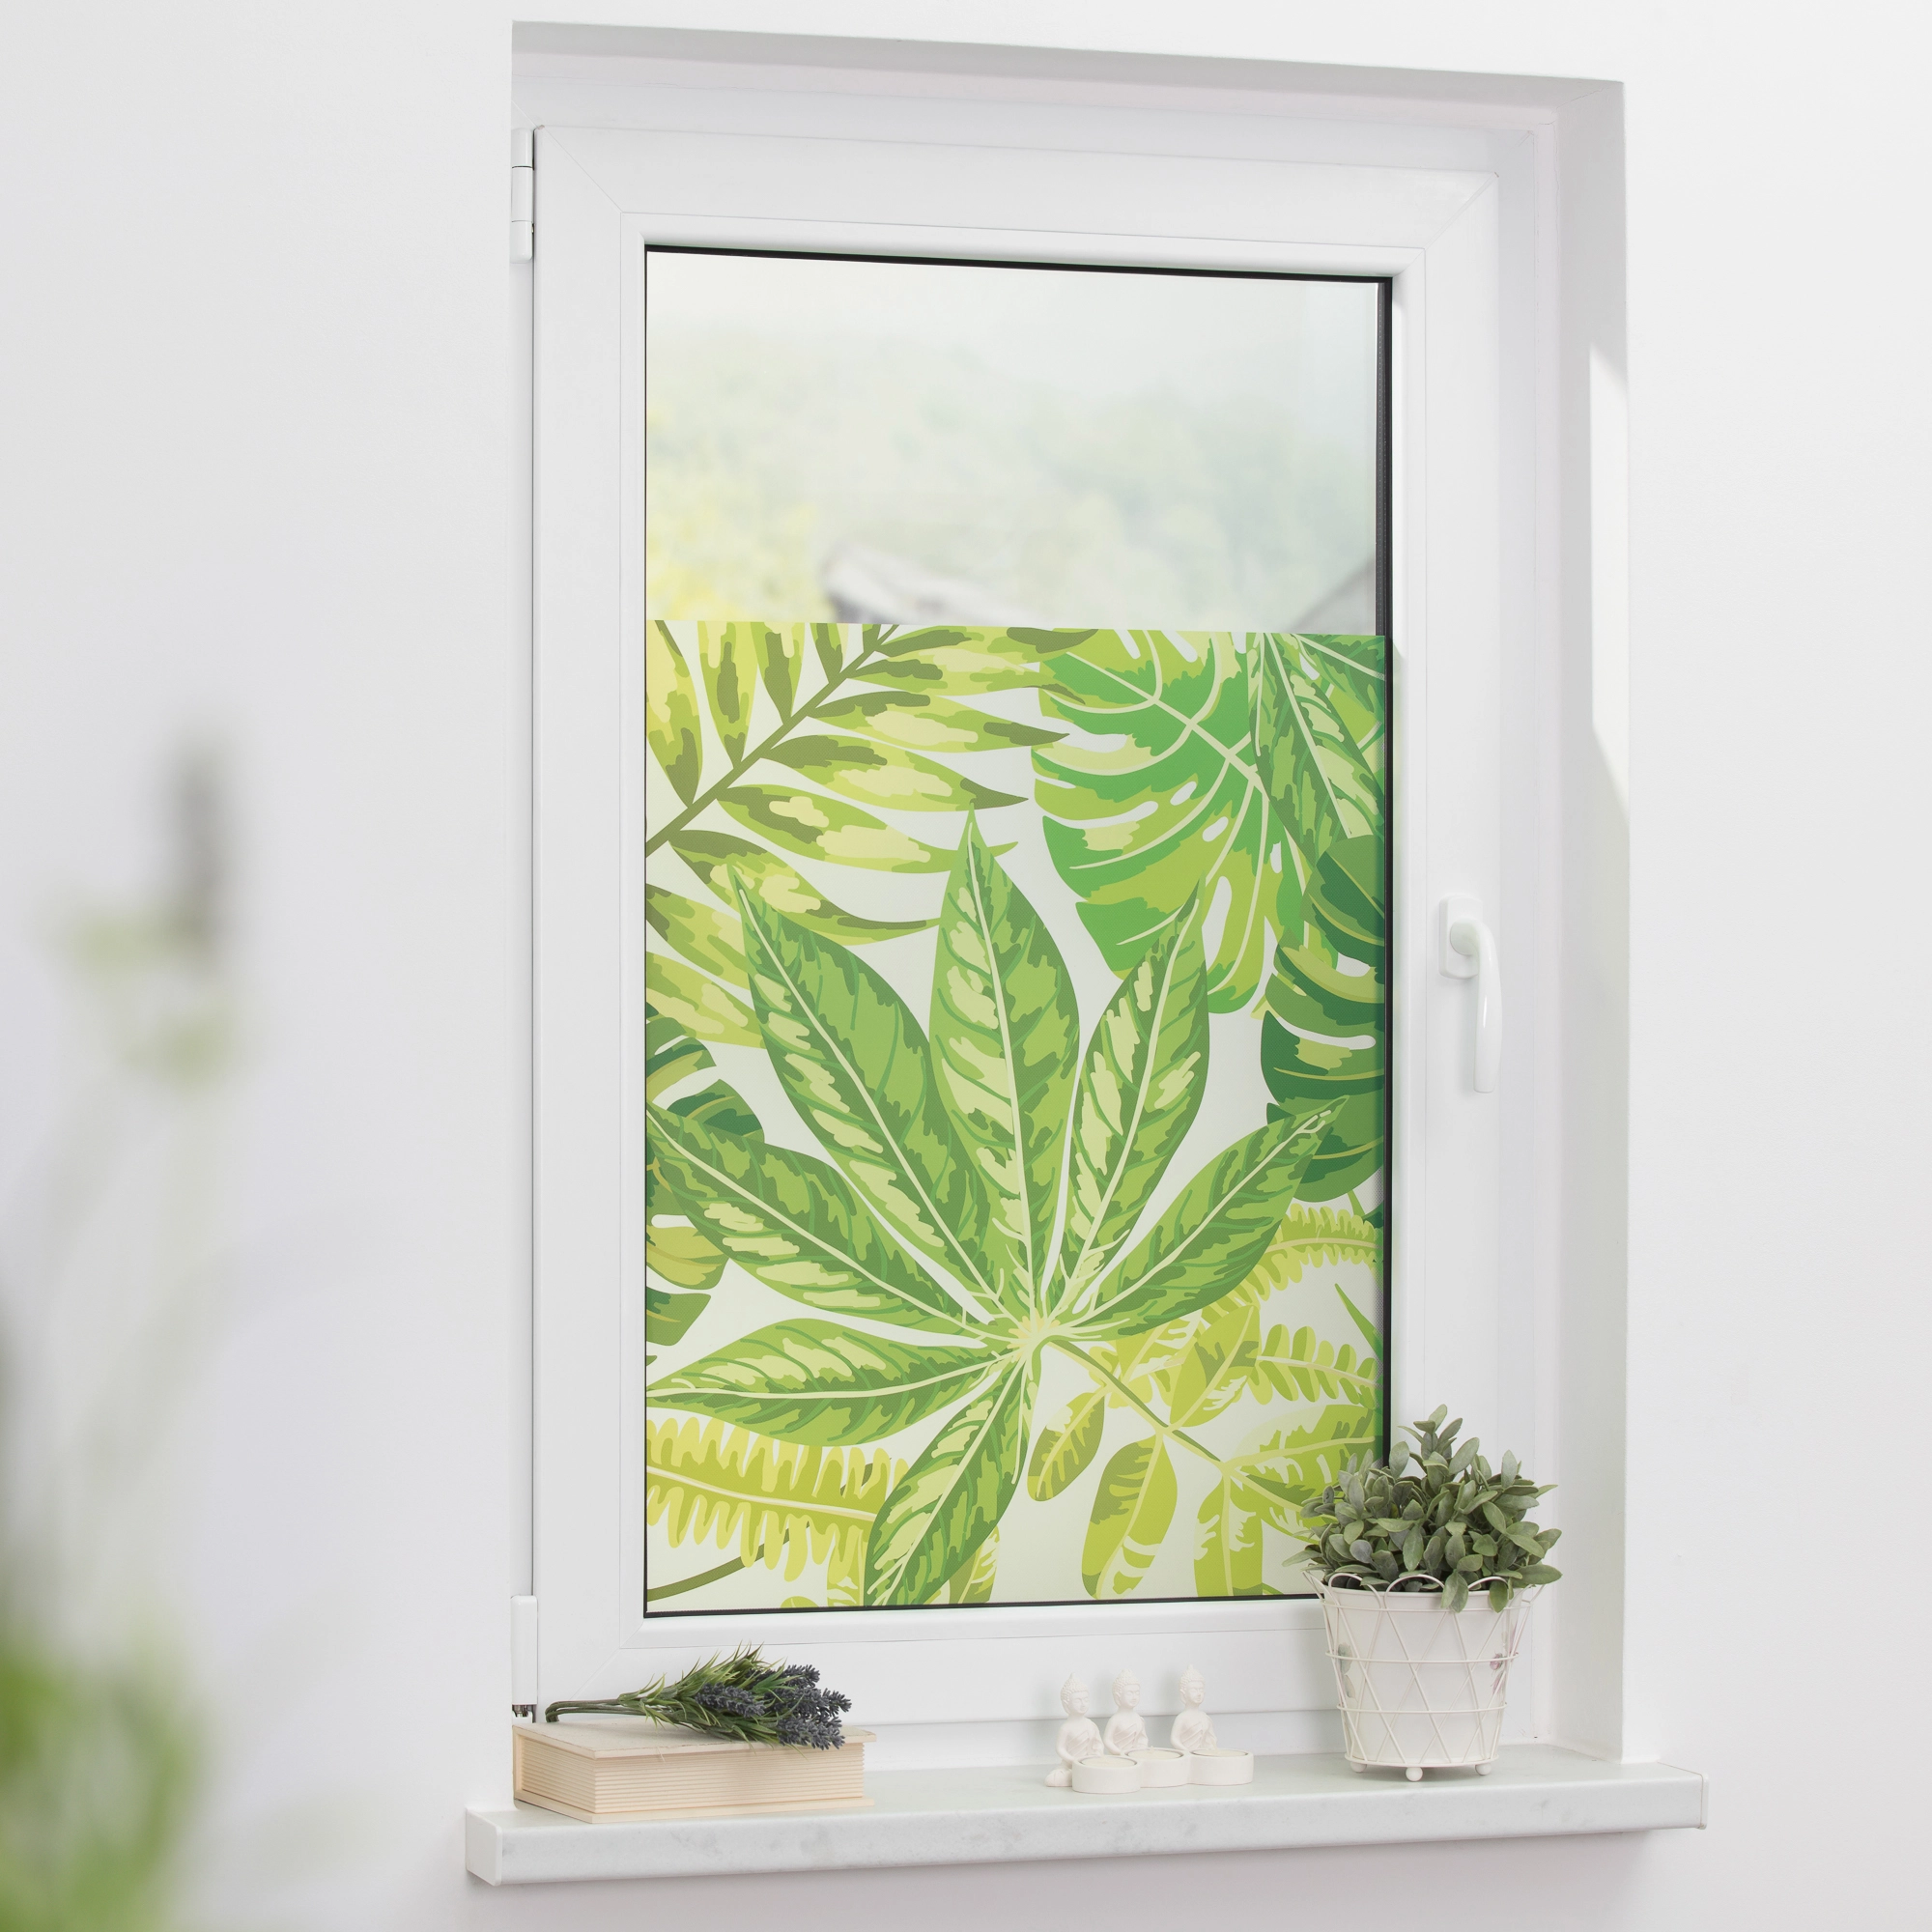 Lichtblick Fensterfolie selbstklebend mit Sichtschutz OBI Grün Blätter kaufen bei